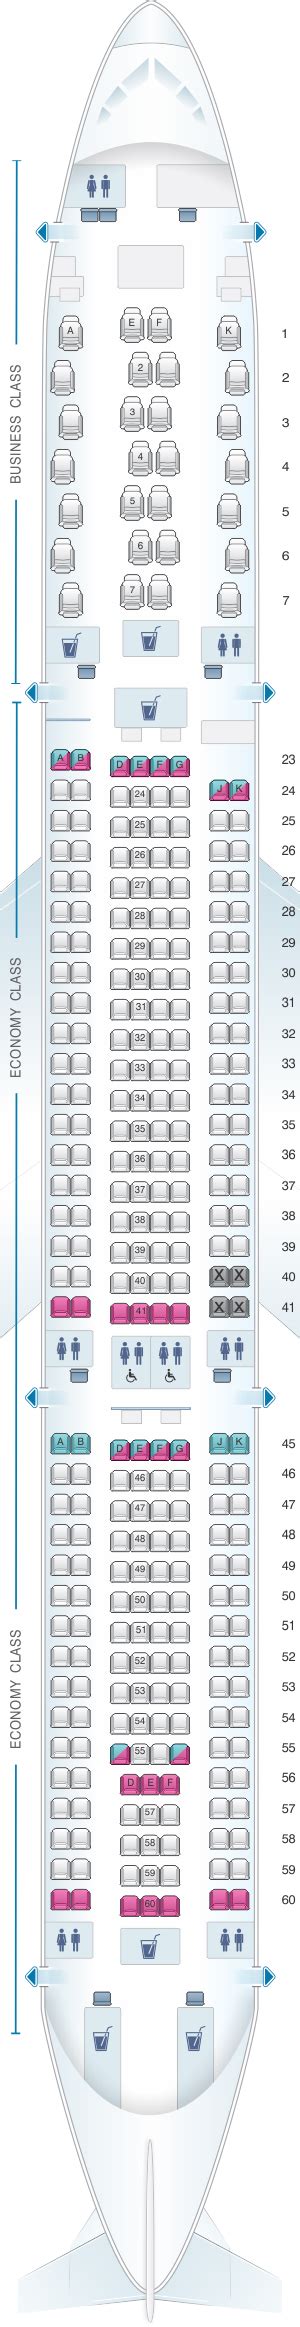 Seat Map Qantas Airways Airbus A330 300 Seatmaestro